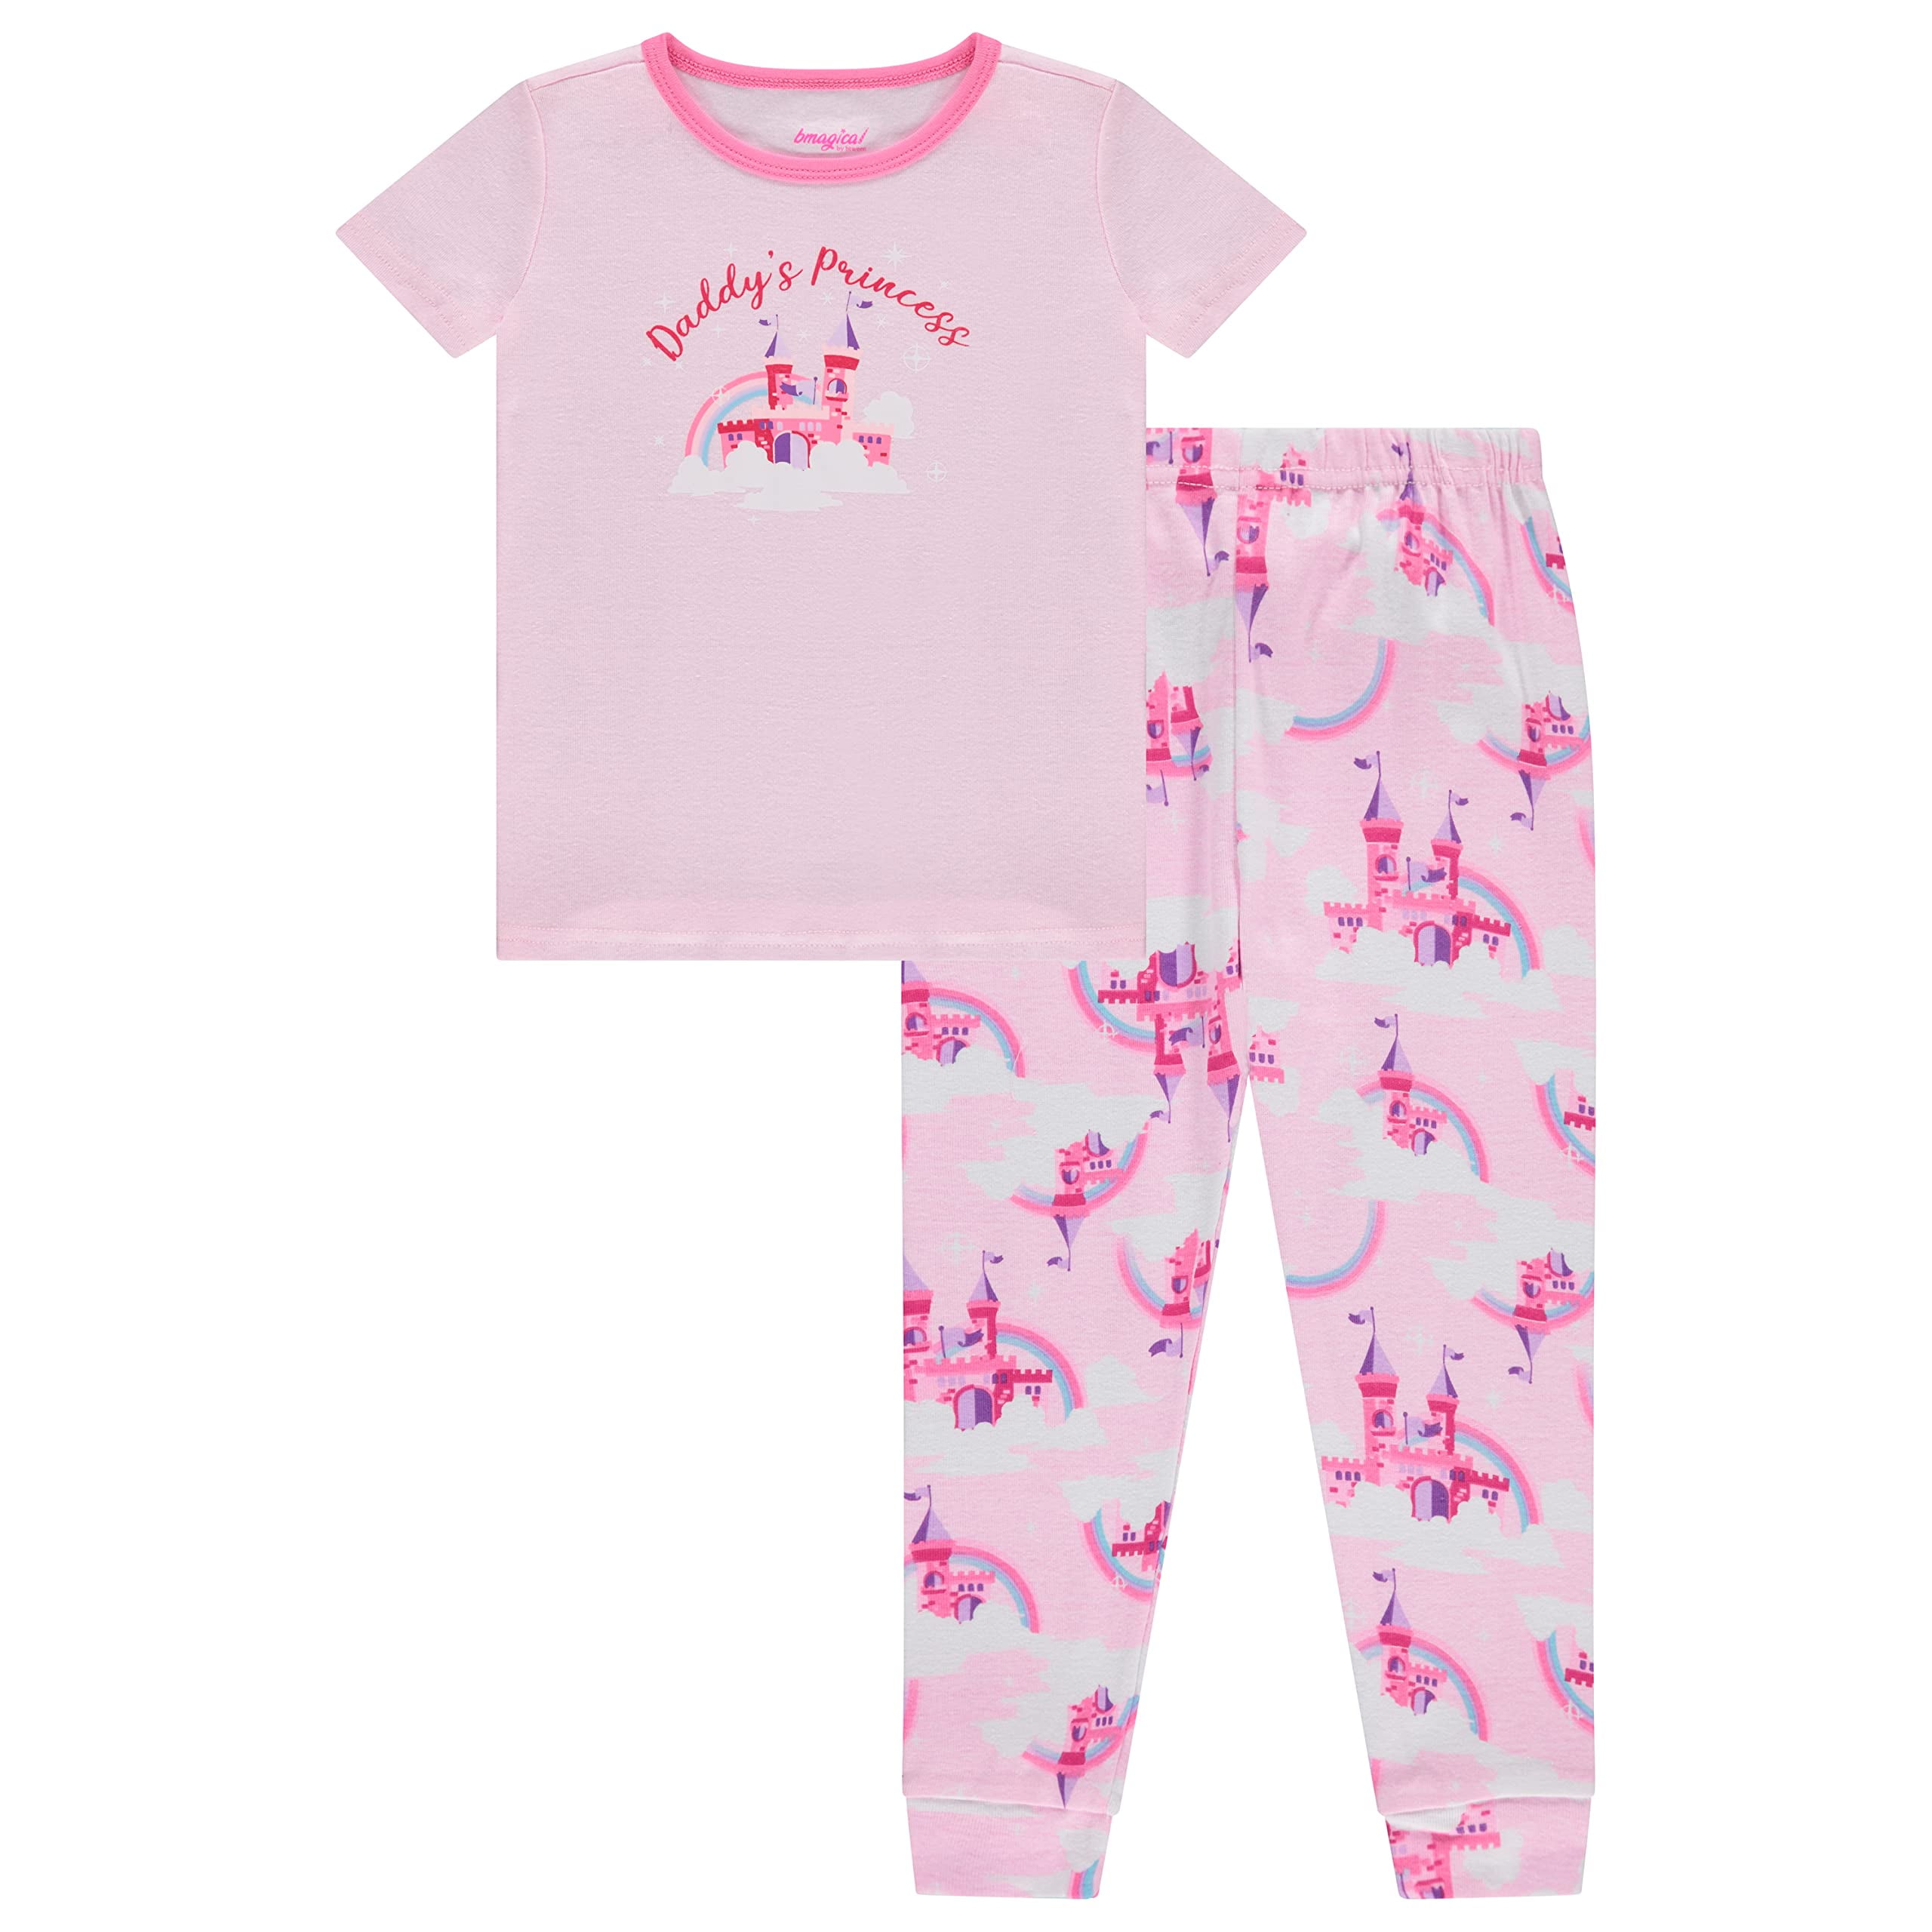 Btween's Toddler Girls 2-Piece Cotton Sleepwear Set: Unicorn, Flower ...